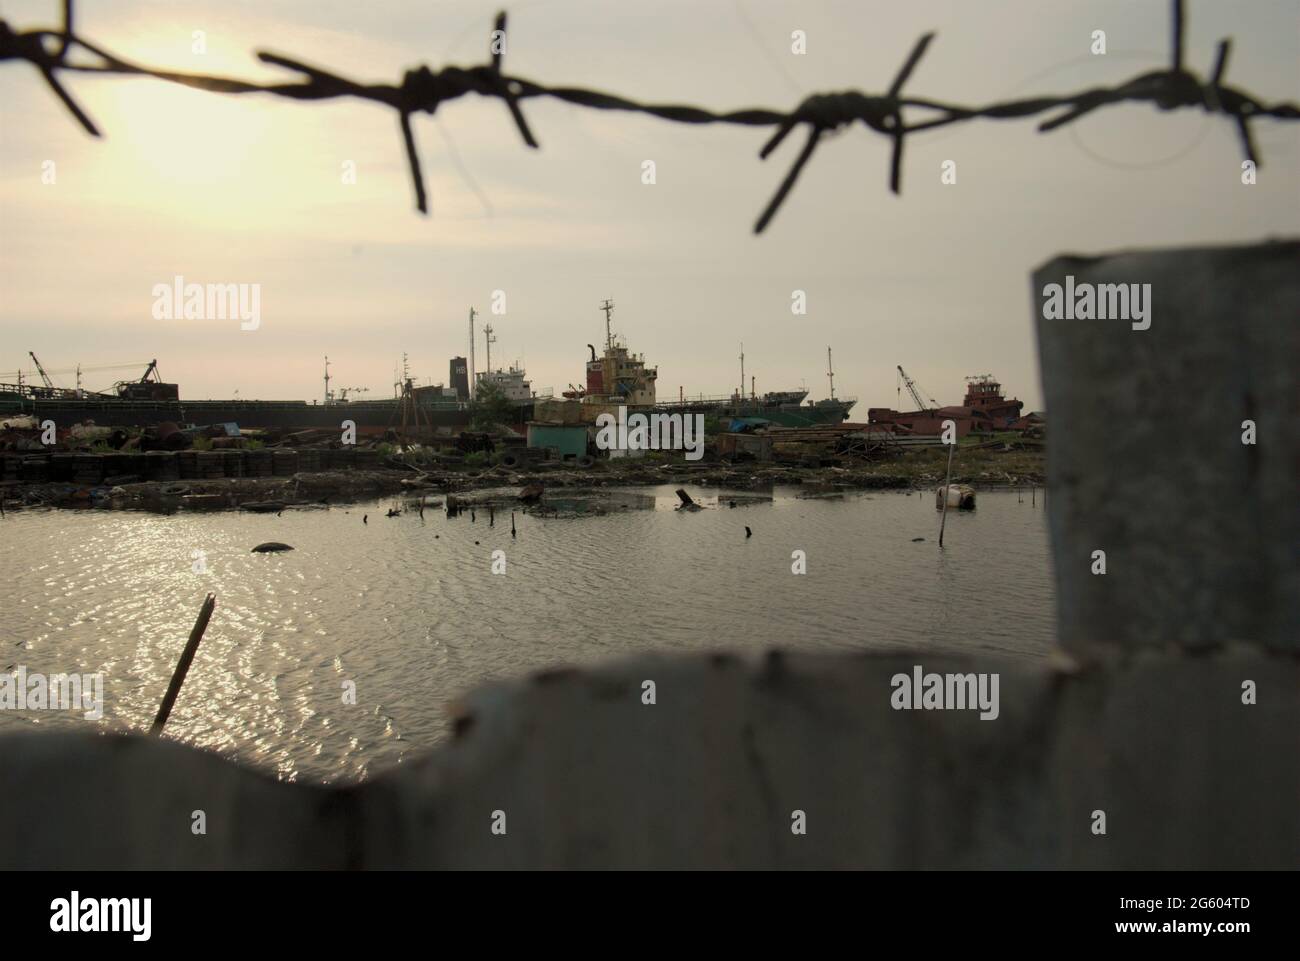 Une cour de démolition de navires est vue à travers une clôture près du village côtier de Marunda à Cilincing, Jakarta, Indonésie. Banque D'Images